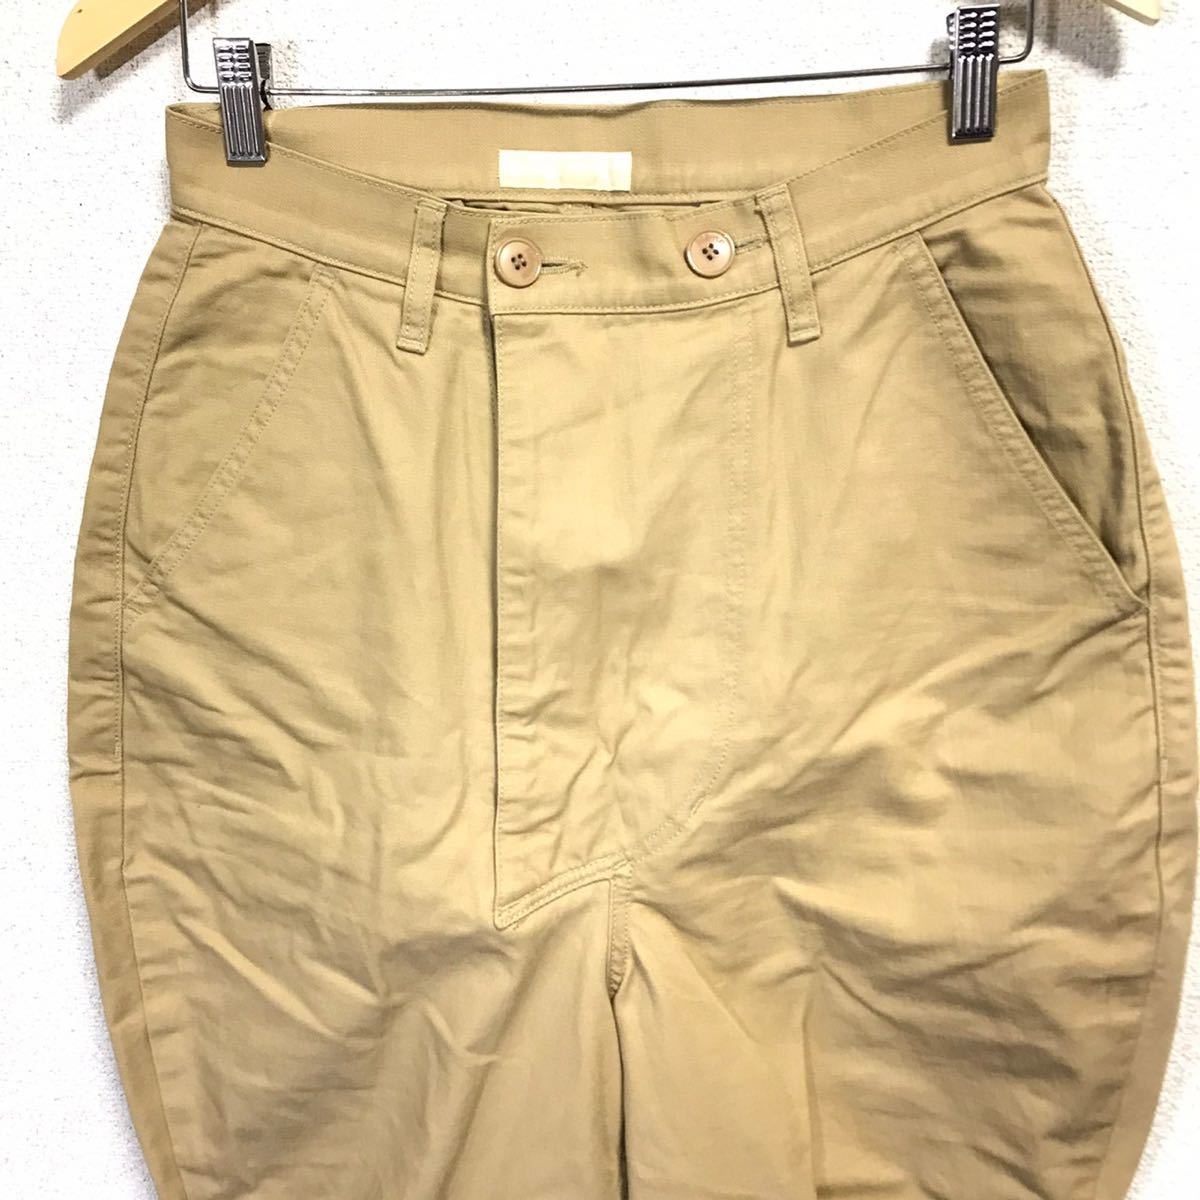 H107dh  сделано в Японии 【Ne-net（... сетка ）】 размер   1(S...)...  укороченные брюки   бежевый   мужской   шорты   